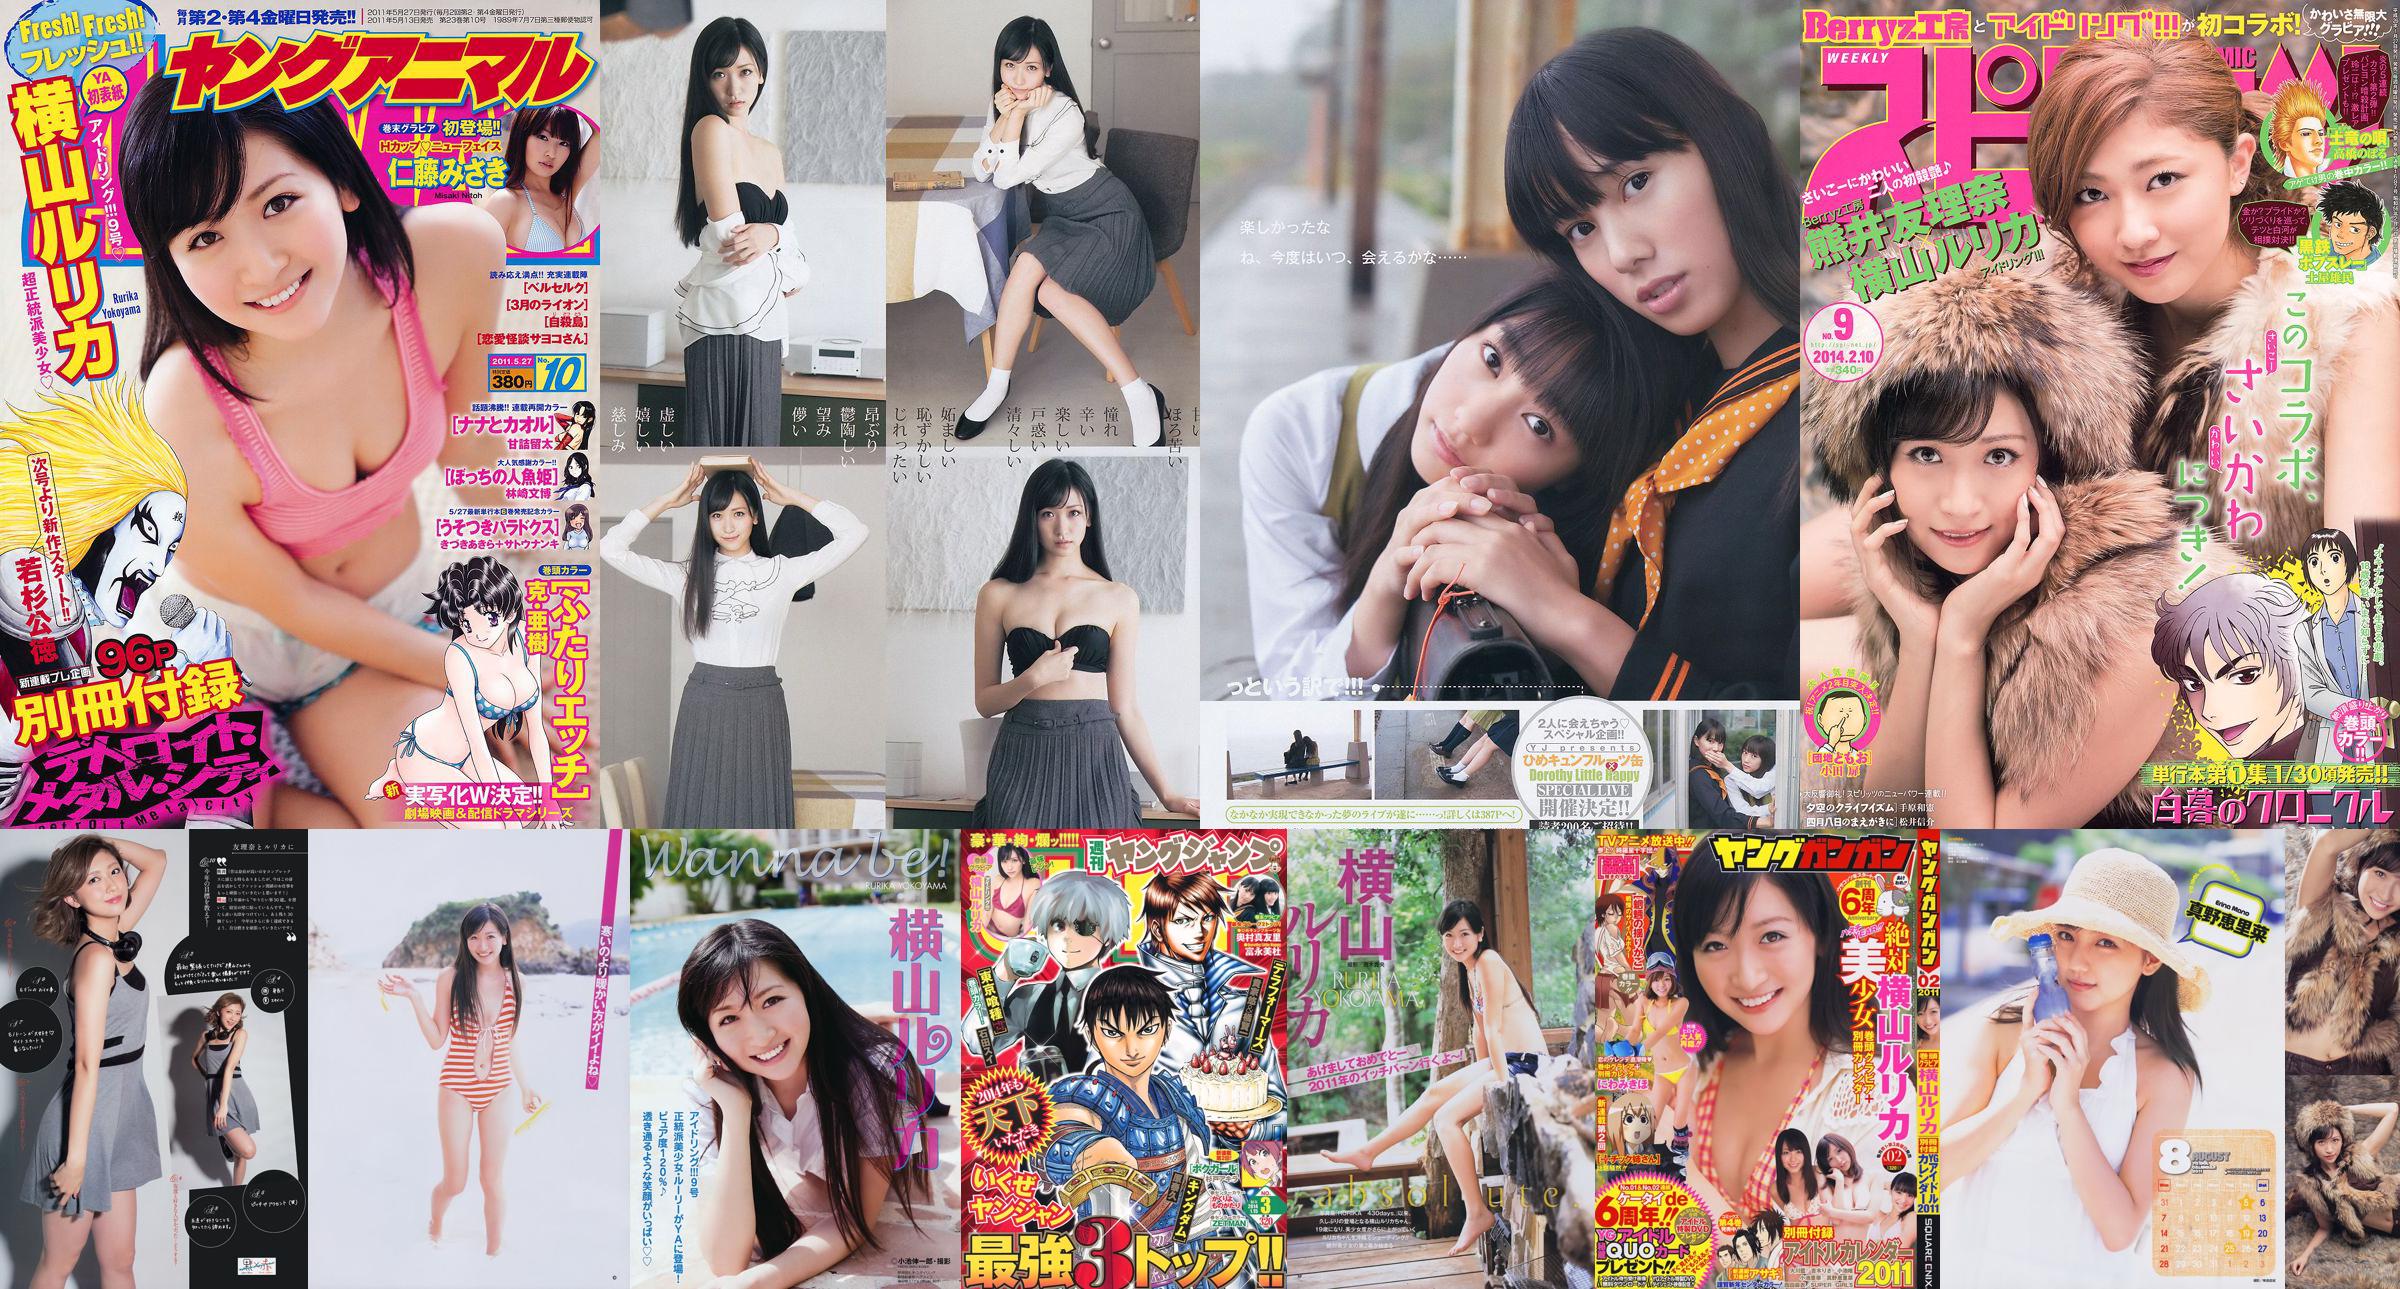 [Young Gangan] Rurika Yokoyama 2011 No.02 Photo Magazine No.cbb8f2 หน้า 13